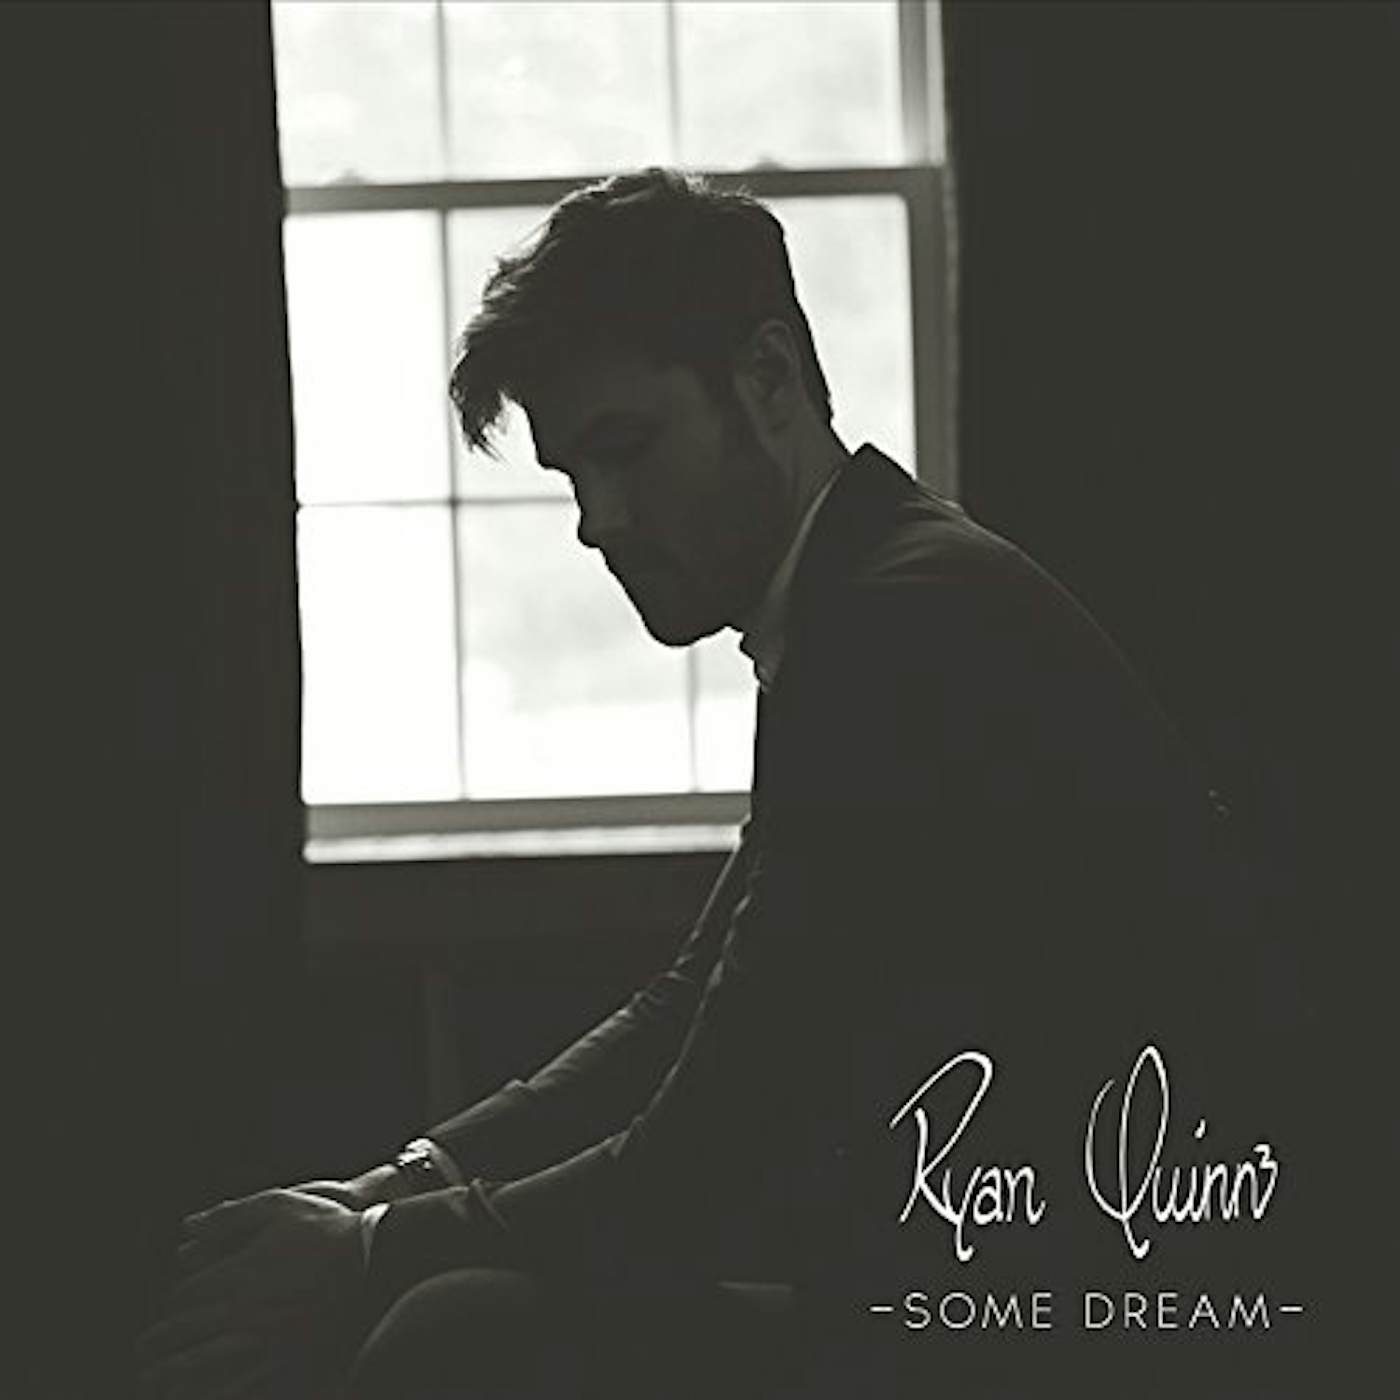 Ryan Quinn SOME DREAM CD